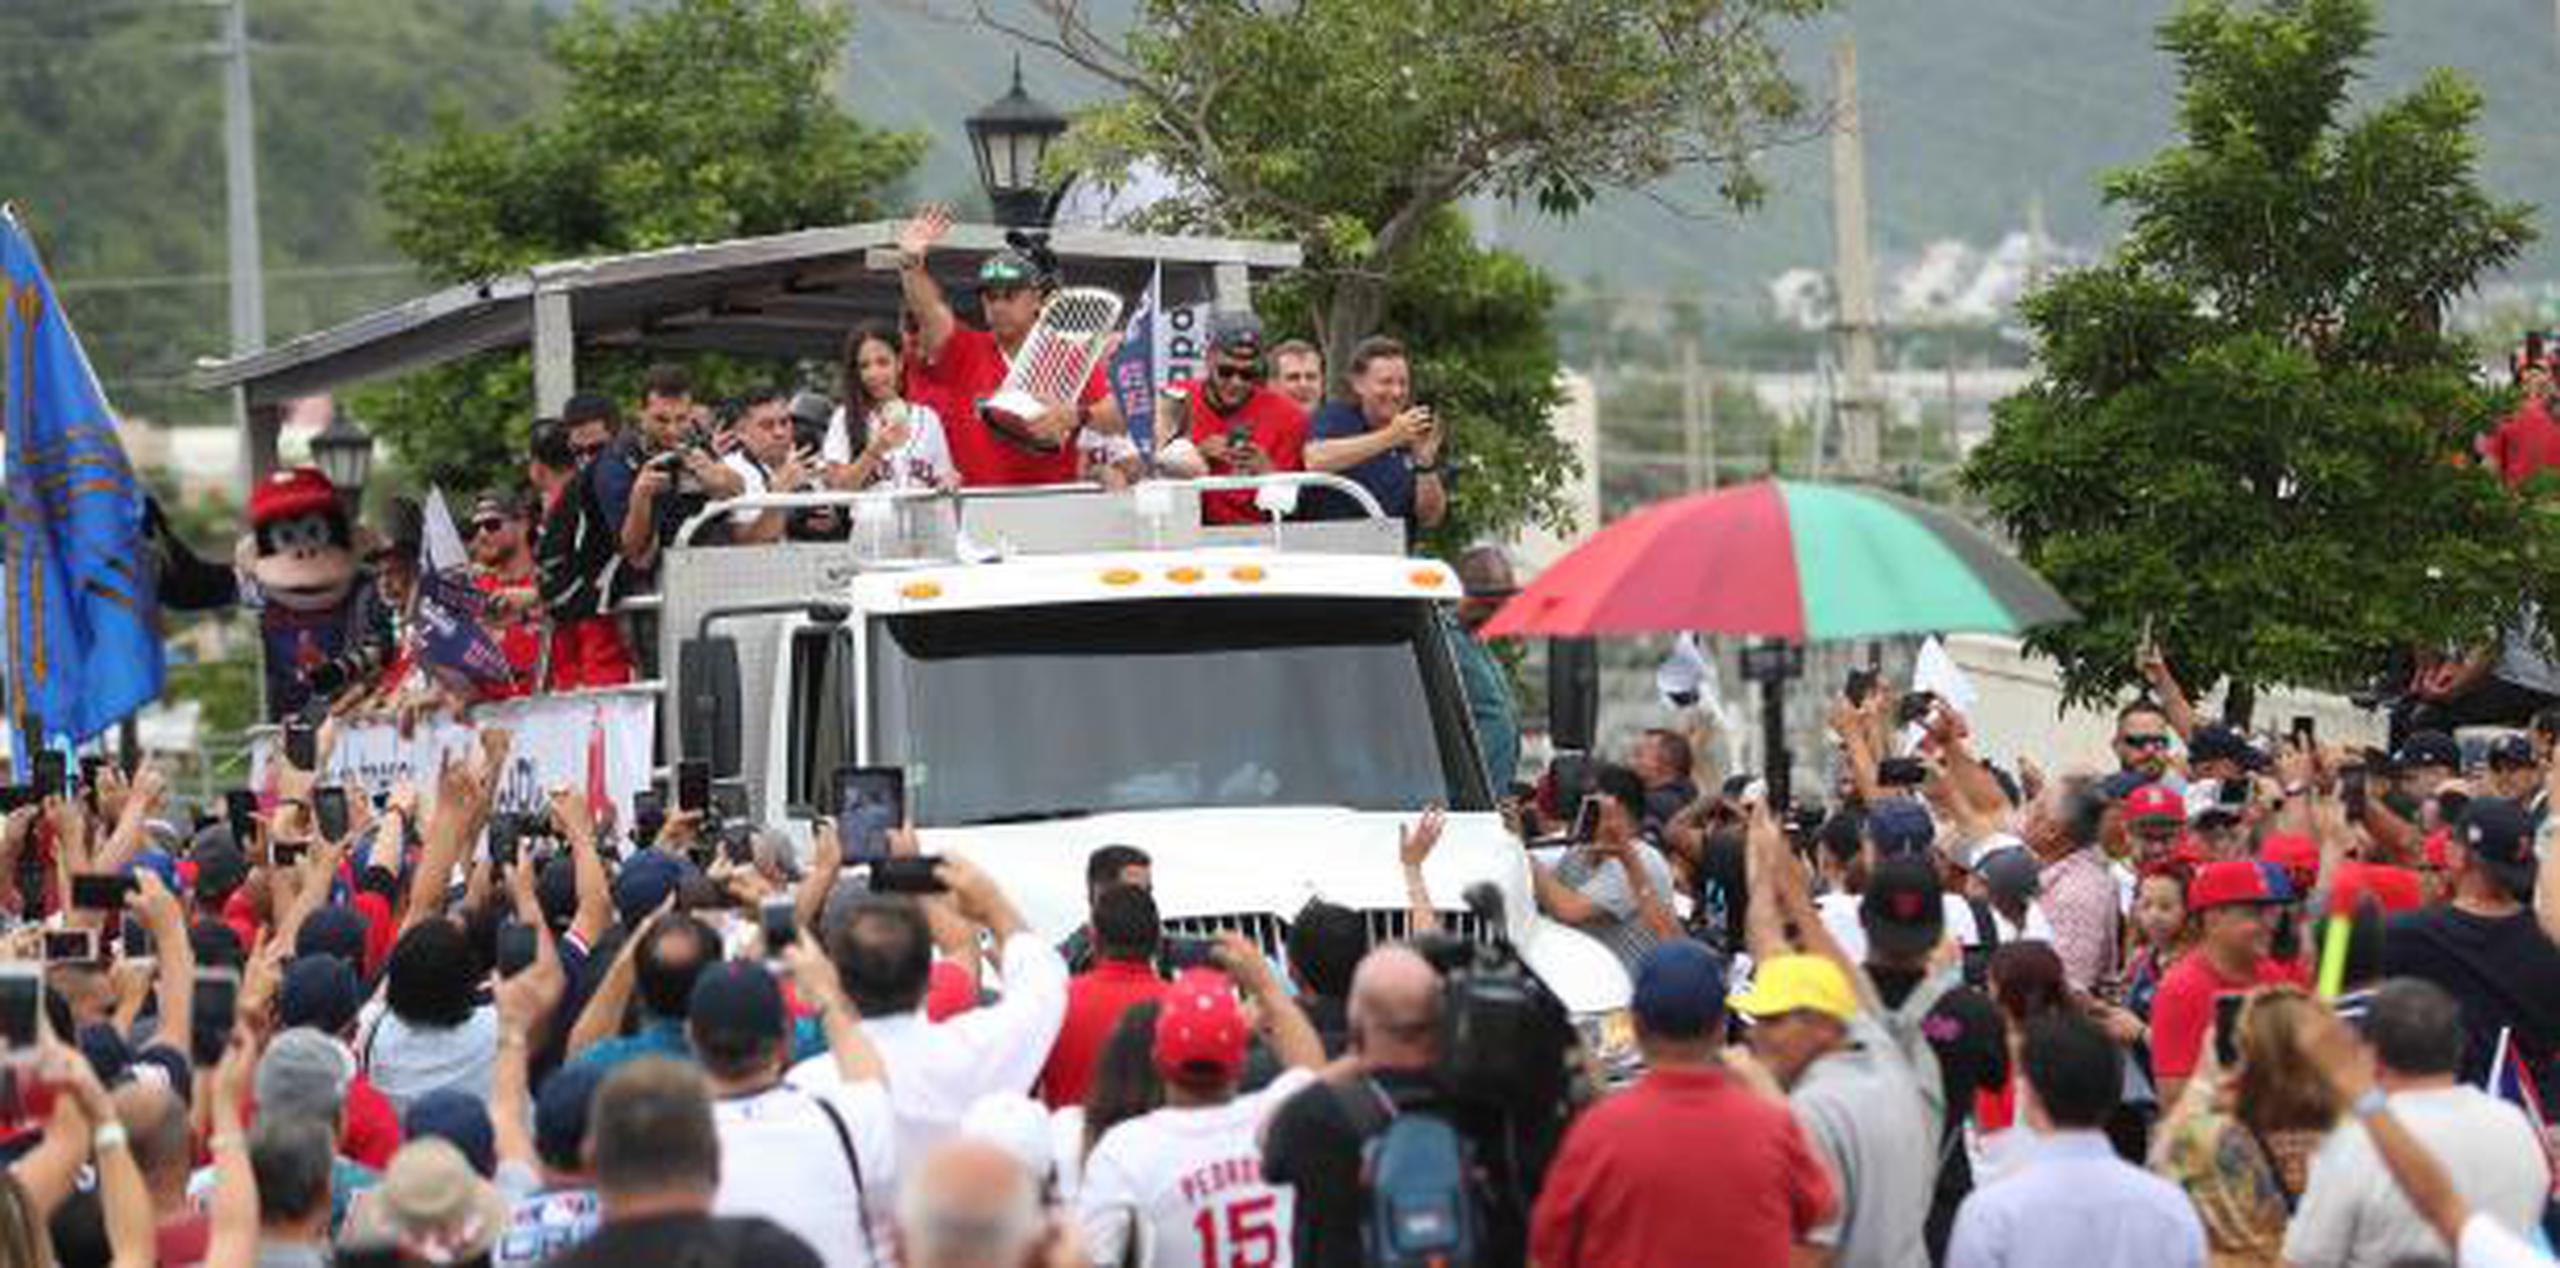 Caravana de los Medias Rojas en Caguas. (vanessa.serra@gfrmedia.com)